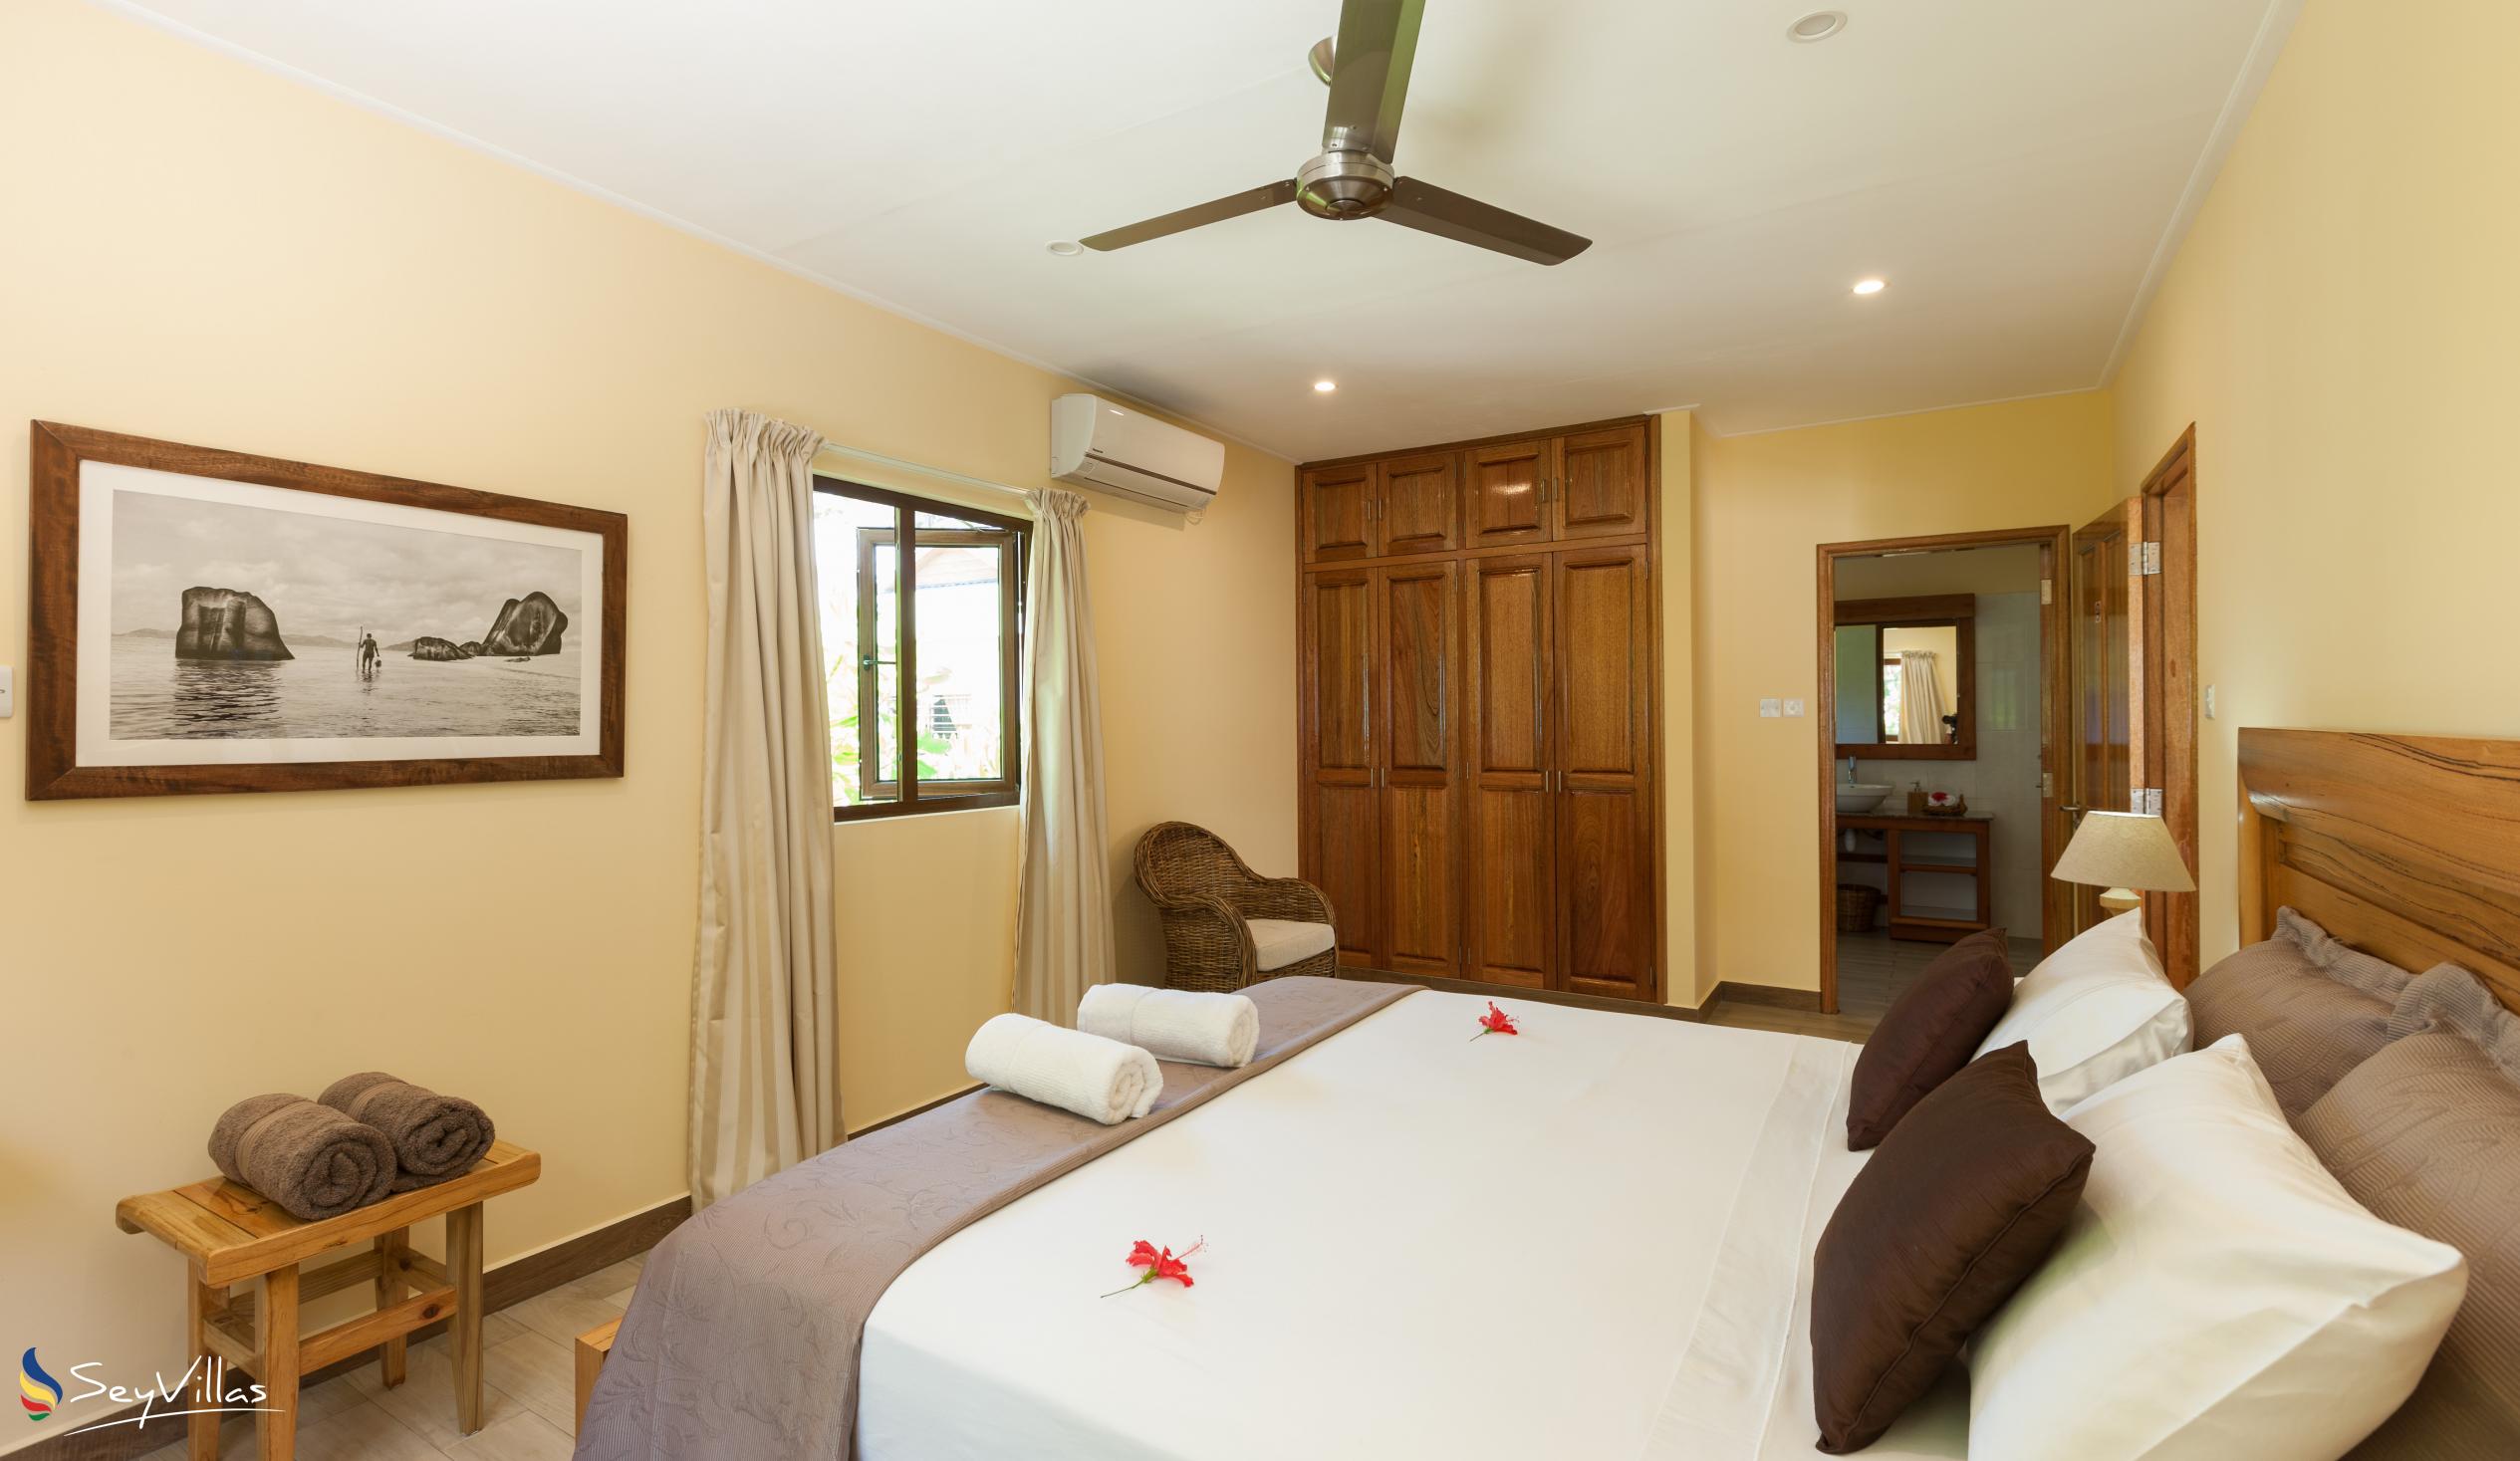 Photo 77: Villa Belle Plage - 1-Bedroom Garden Villa - Praslin (Seychelles)